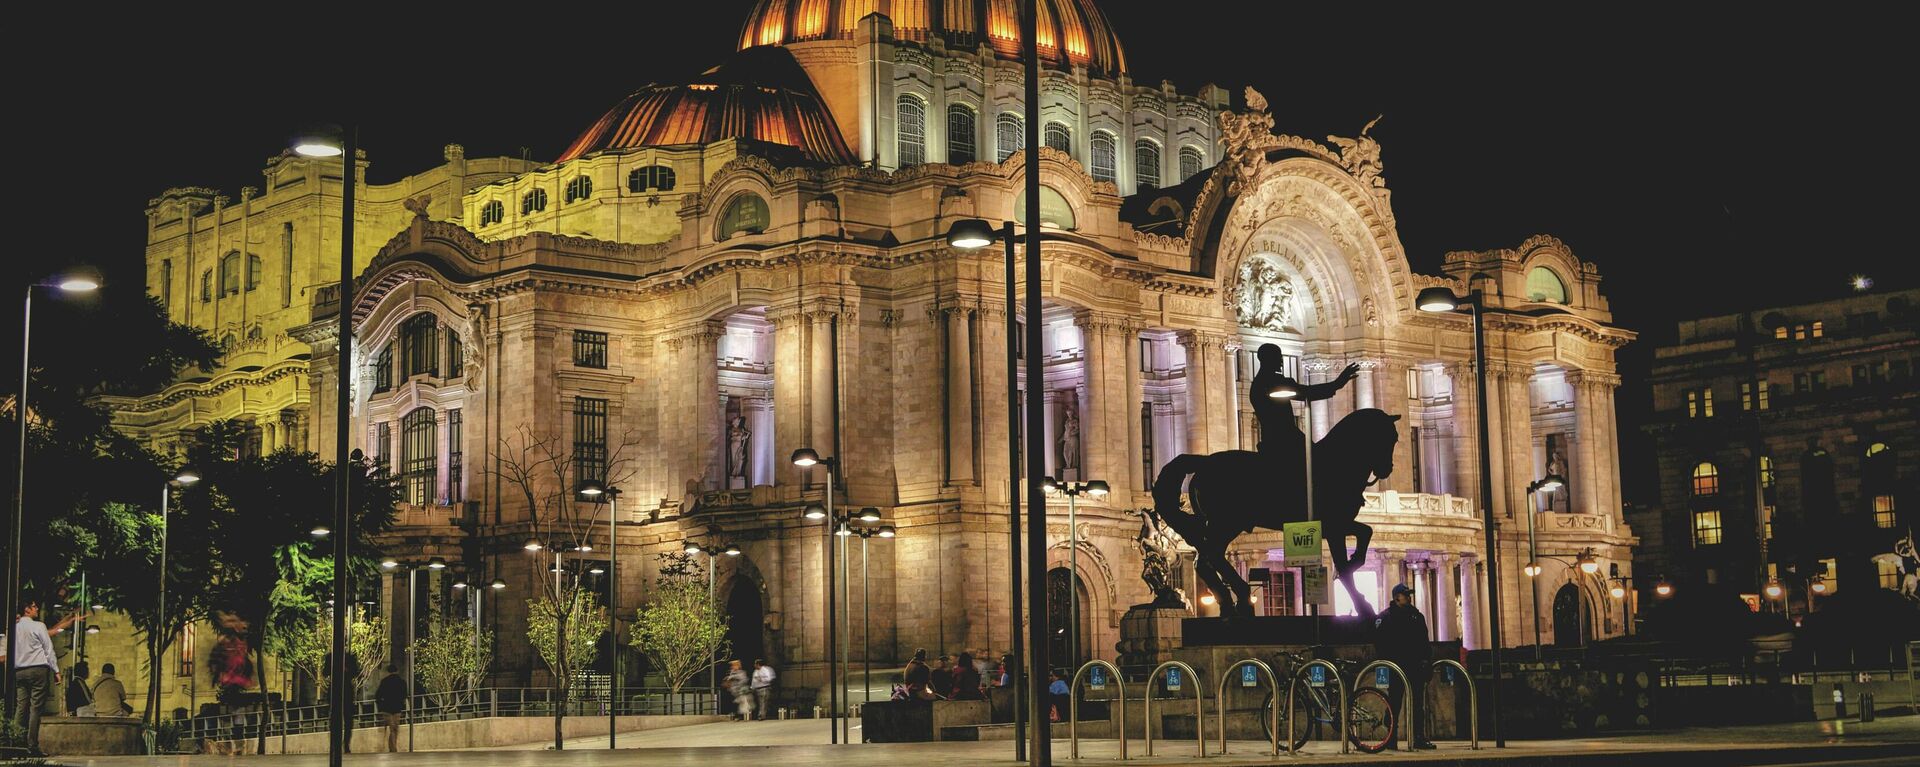 Palacio de Bellas Artes en Ciudad de México - Sputnik Mundo, 1920, 30.06.2021